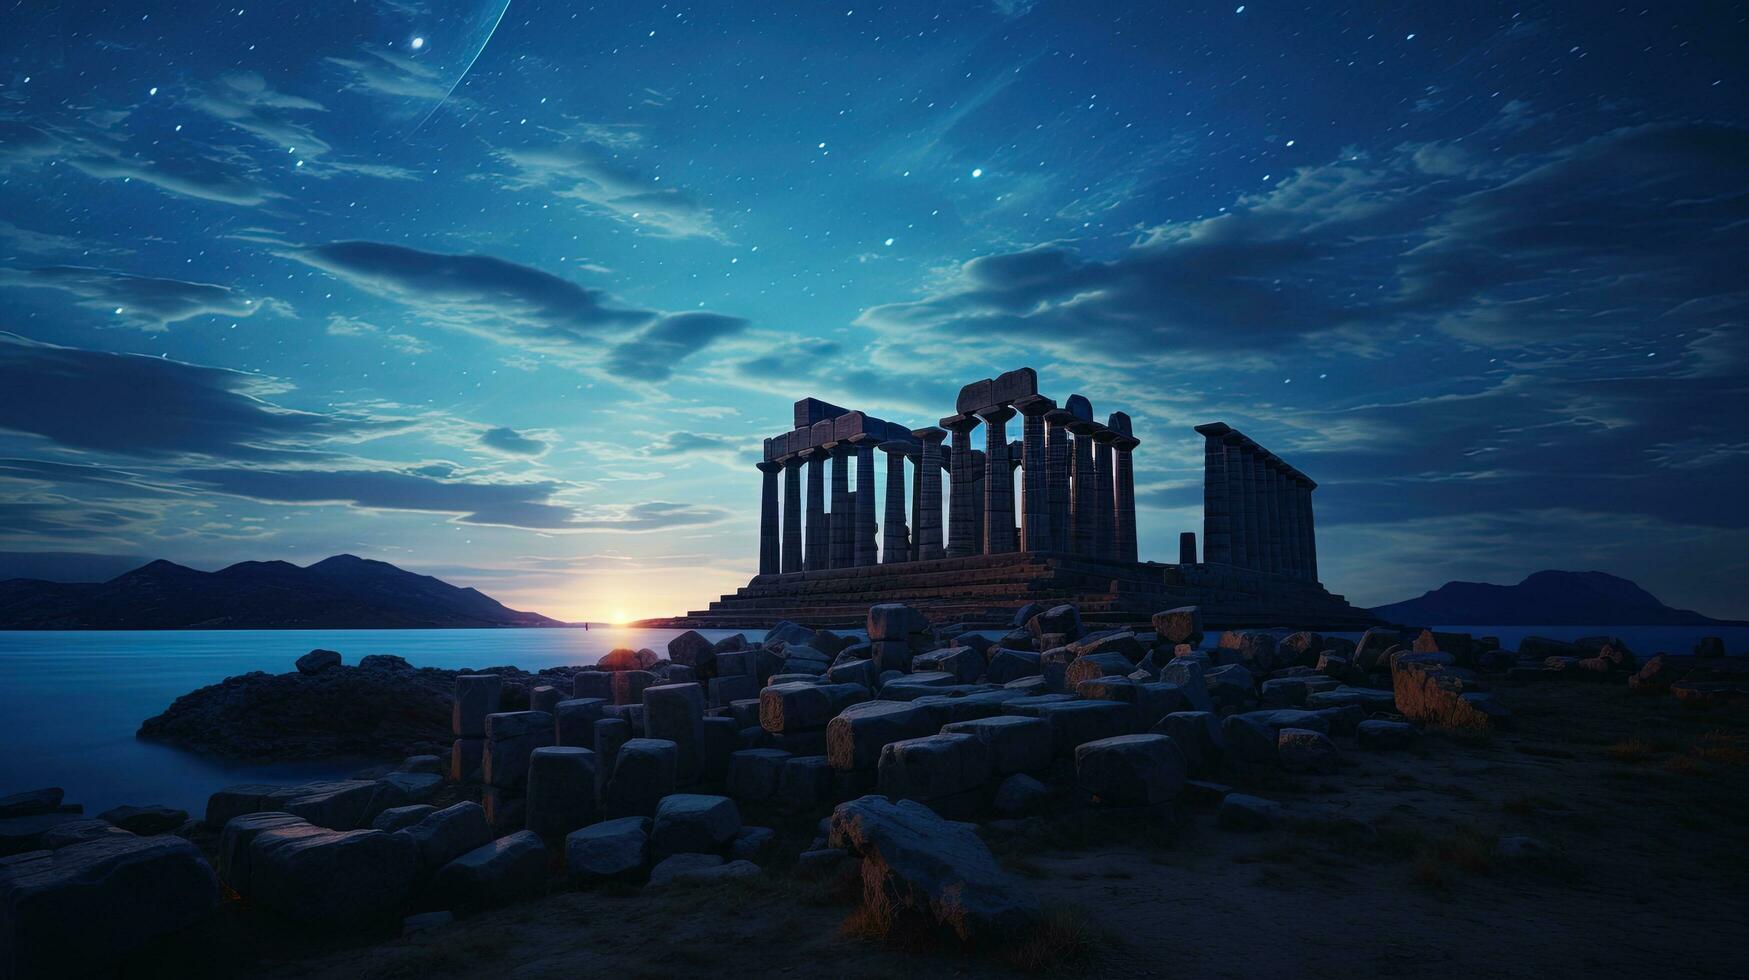 Poseidon s tempel onder een nacht lucht gevulde met sterren. silhouet concept foto